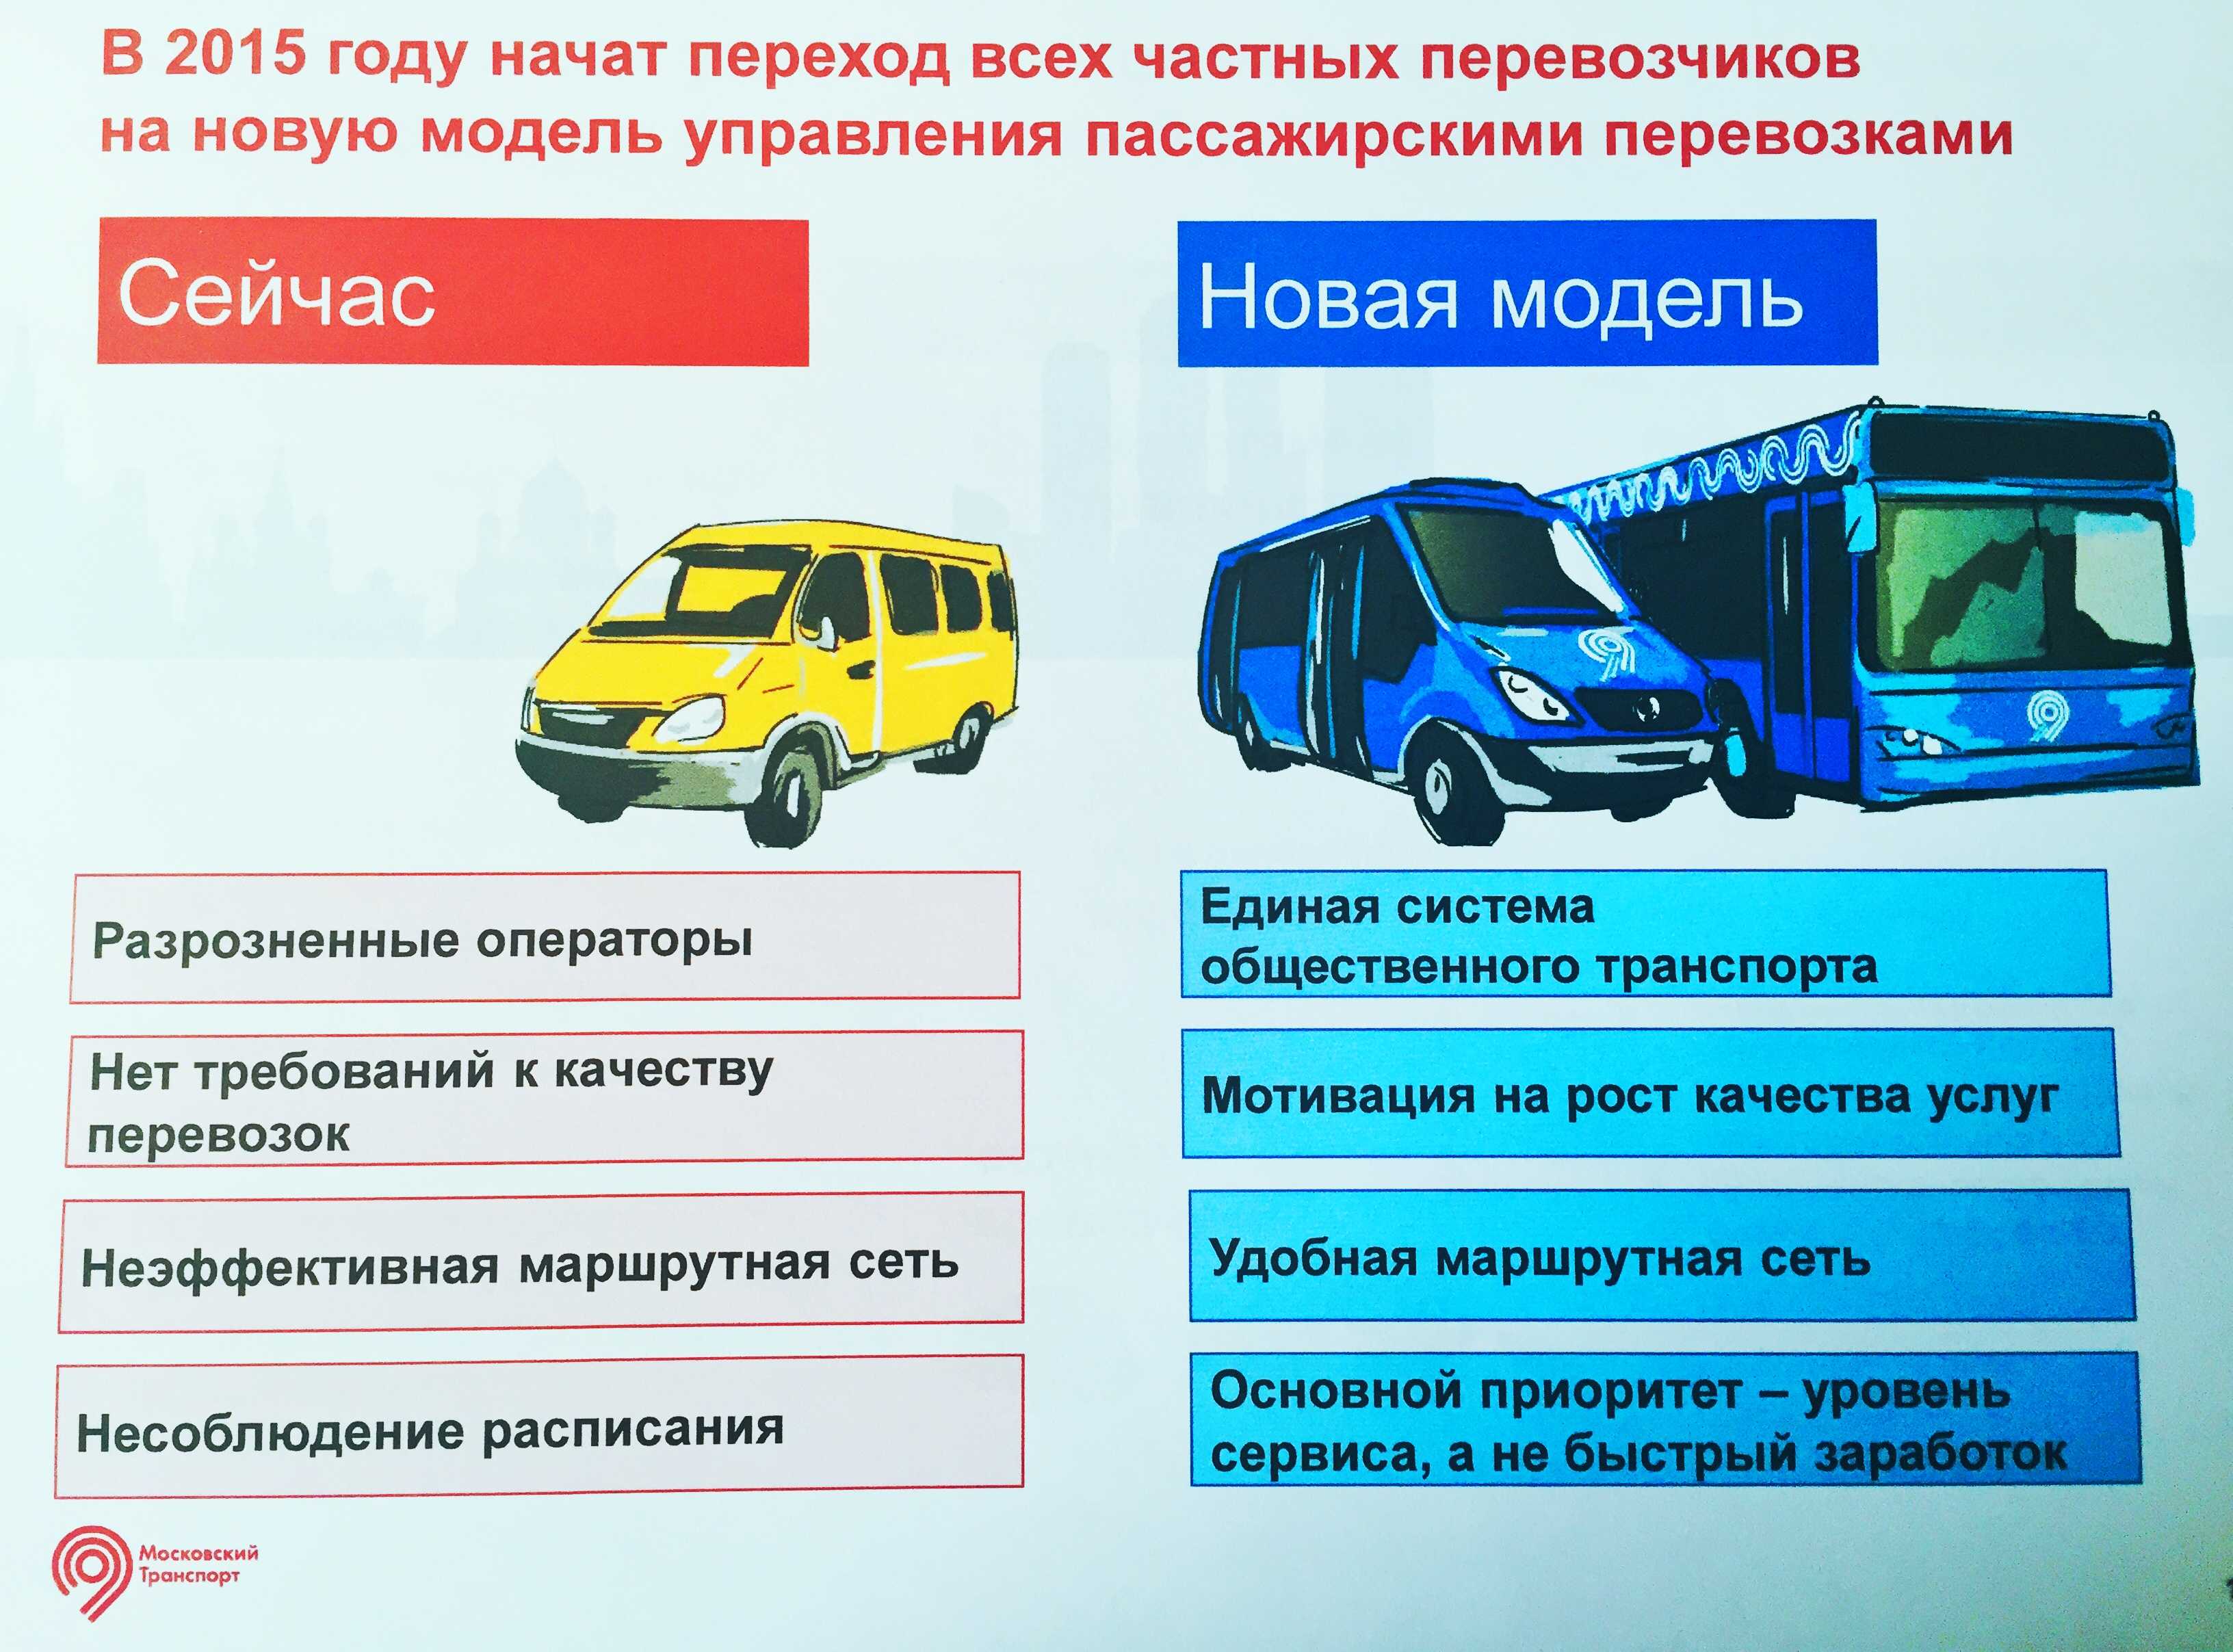 Городские автобусы: общие характеристики, устройство, особенности салона, типы транспорта, различие во вместимости и других параметрах, марки и модели, картинки